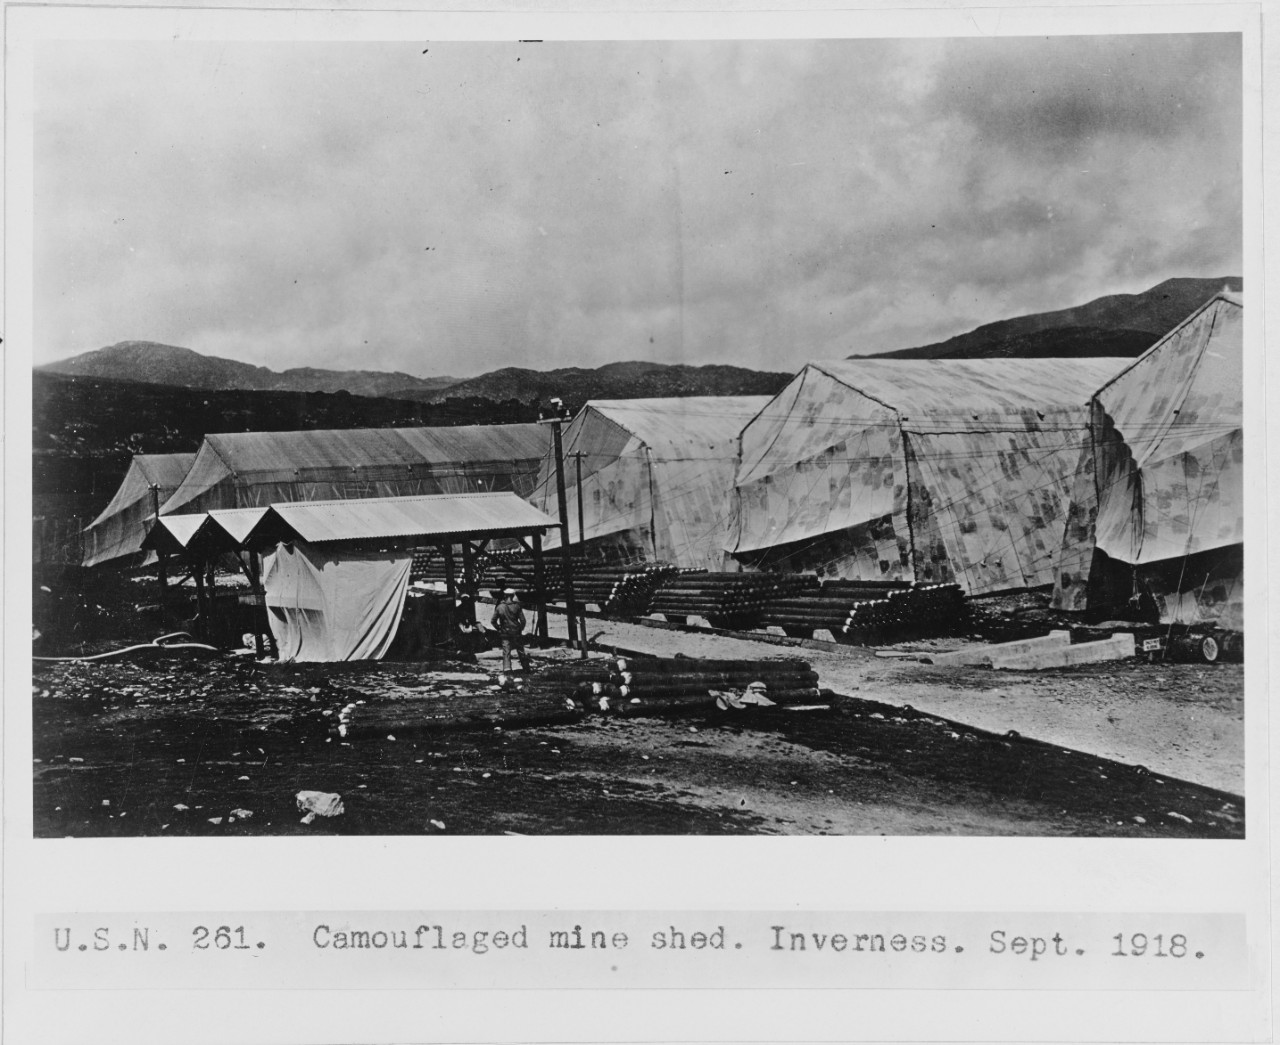 Camouflaged mine sheds. Inverness, Scotland. September 1918. USN 261